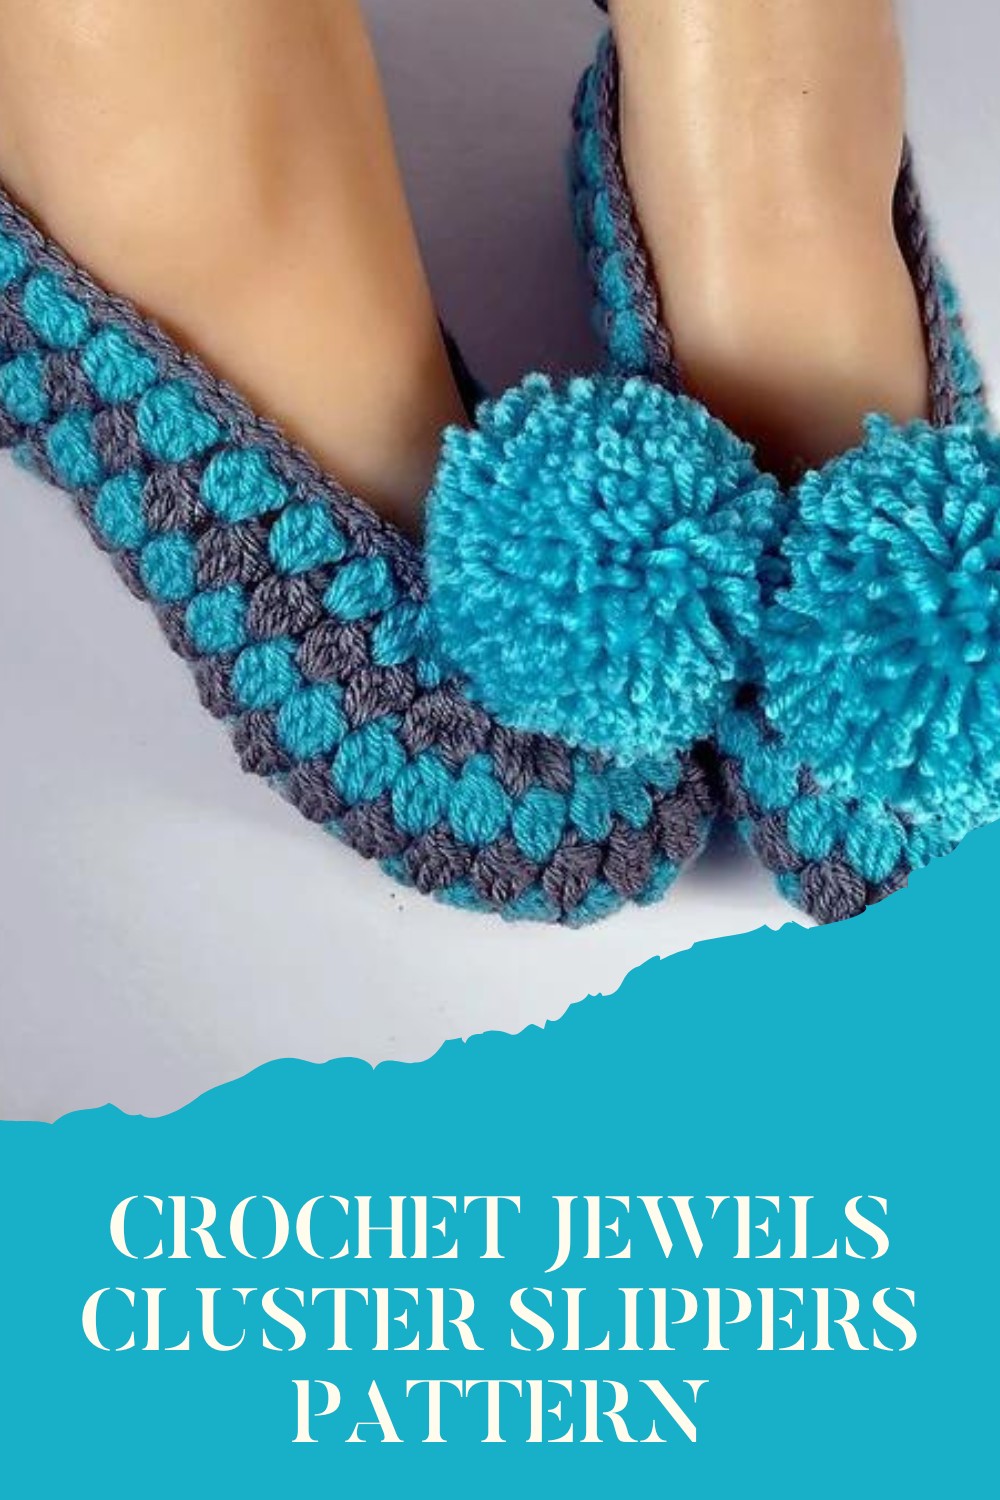 Crochet Jewels Cluster Slippers Pattern